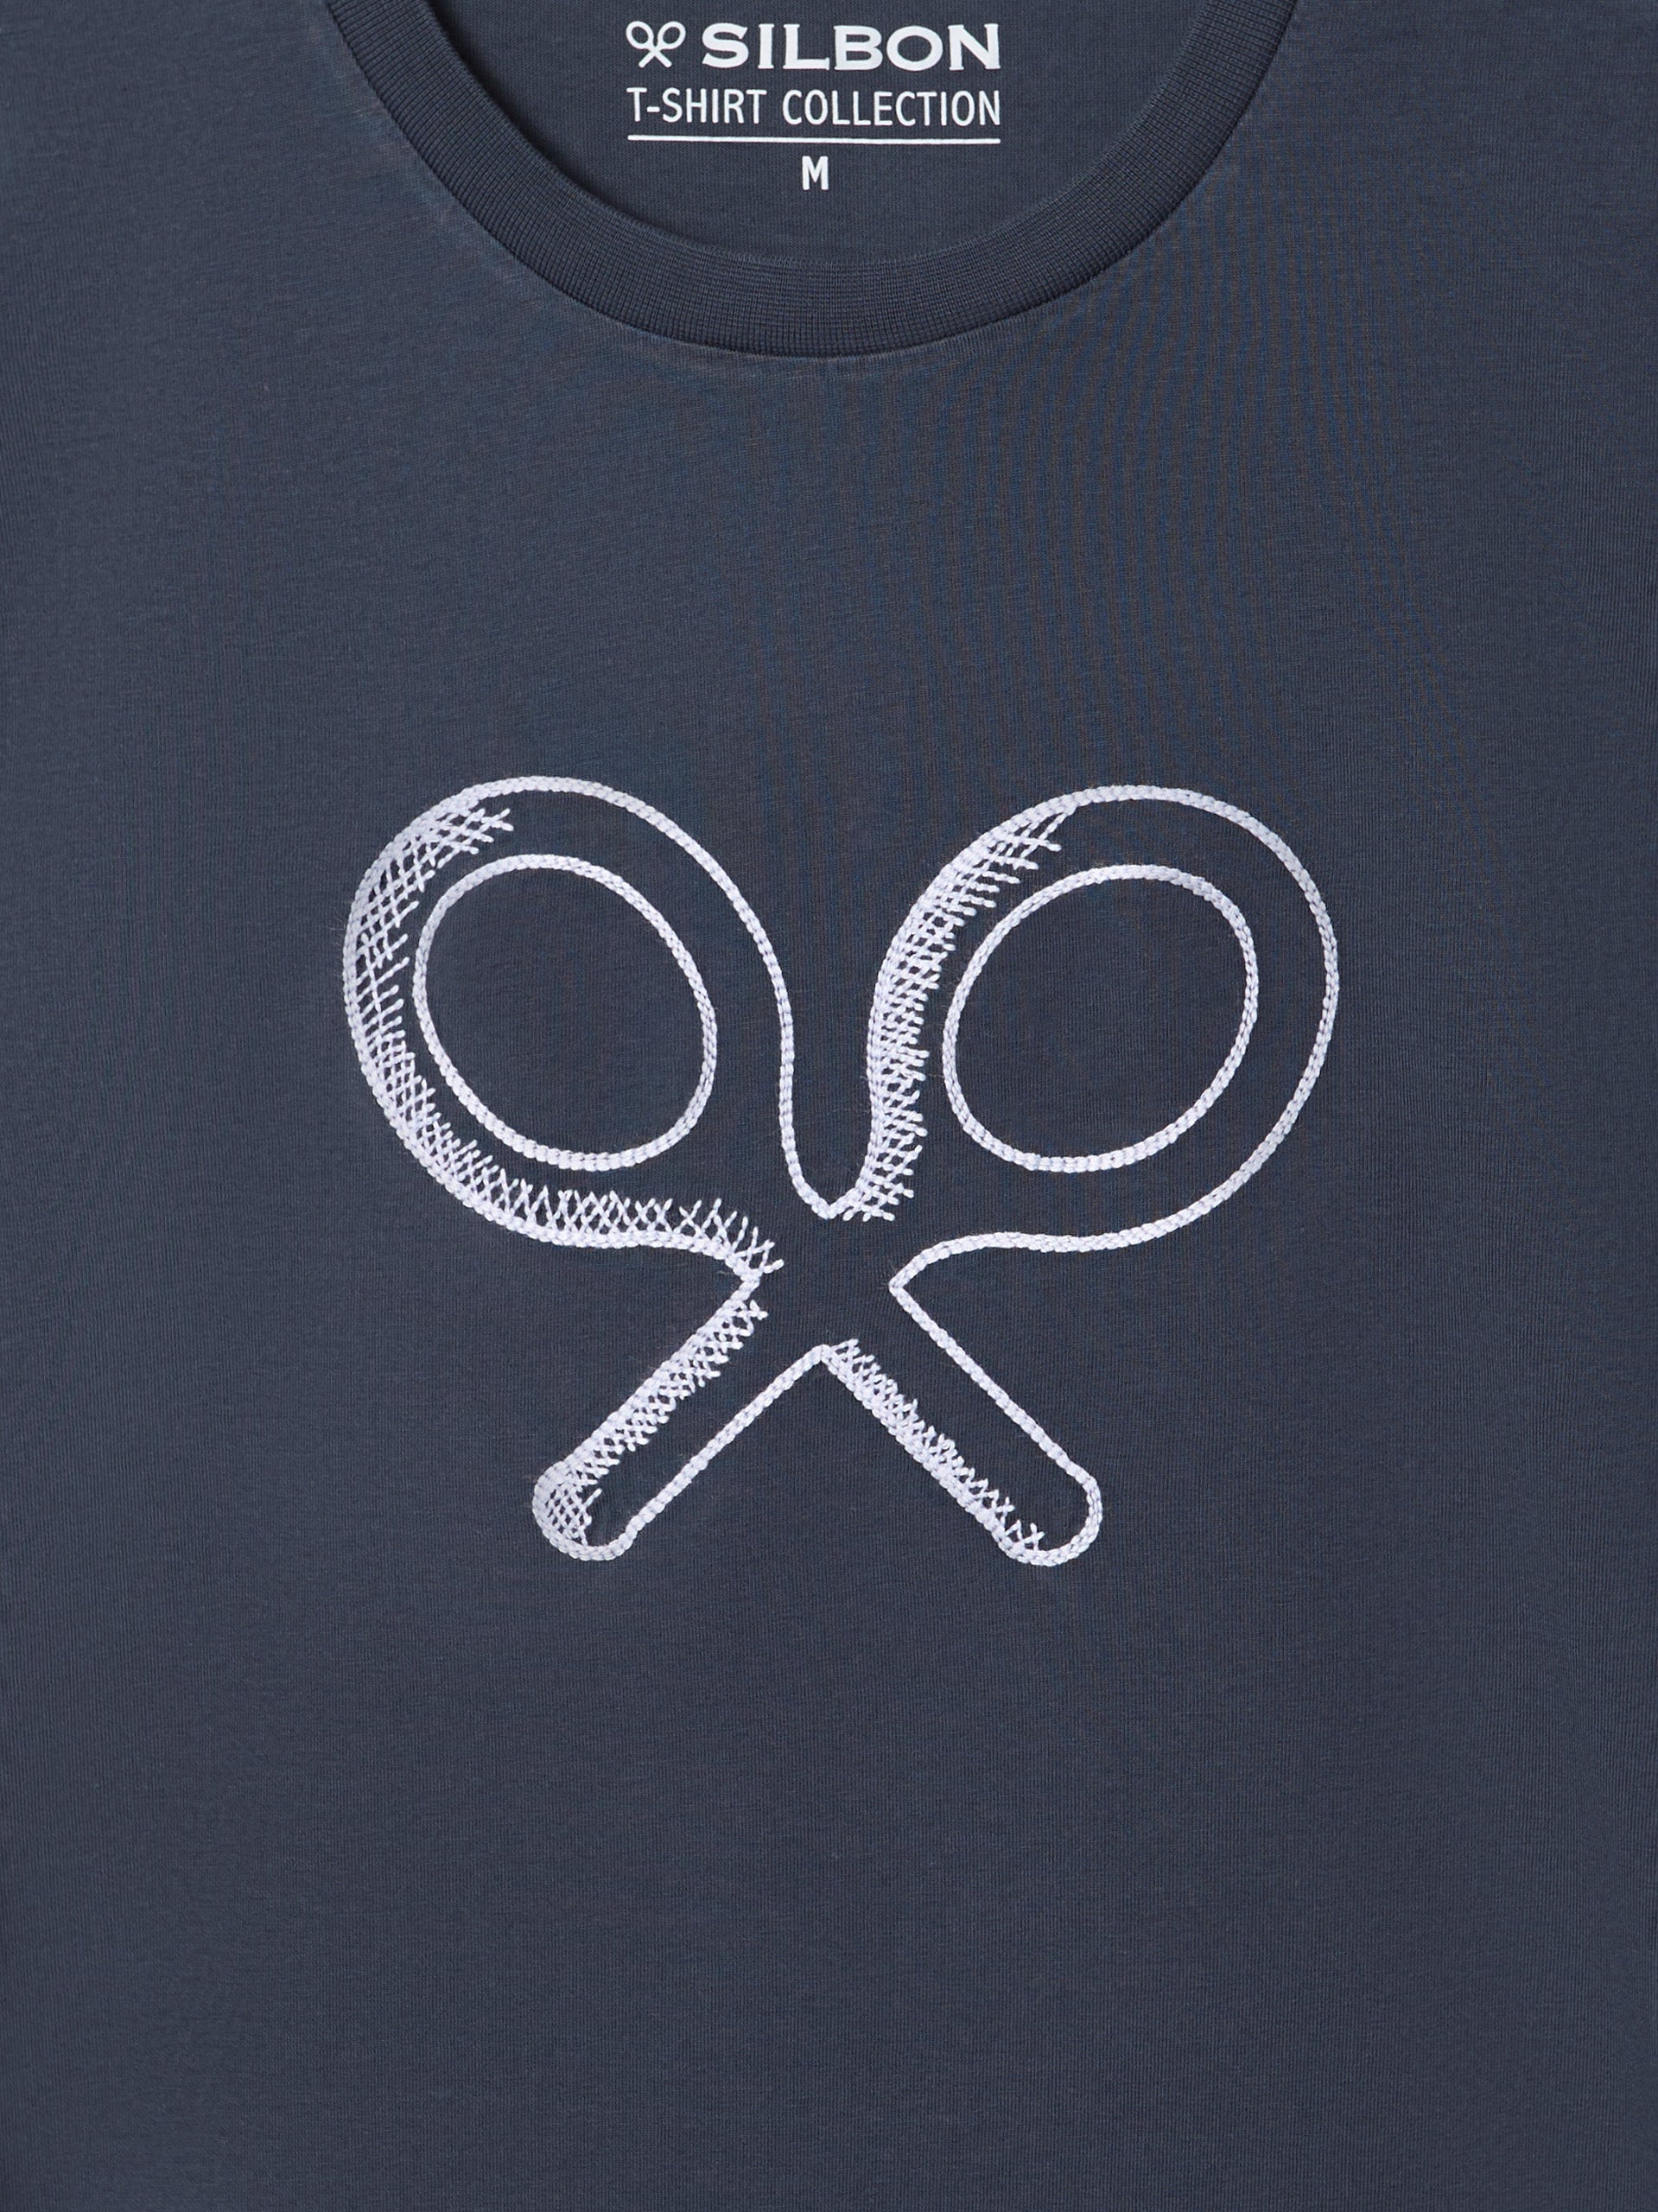 Camiseta raqueta bordada azul marino